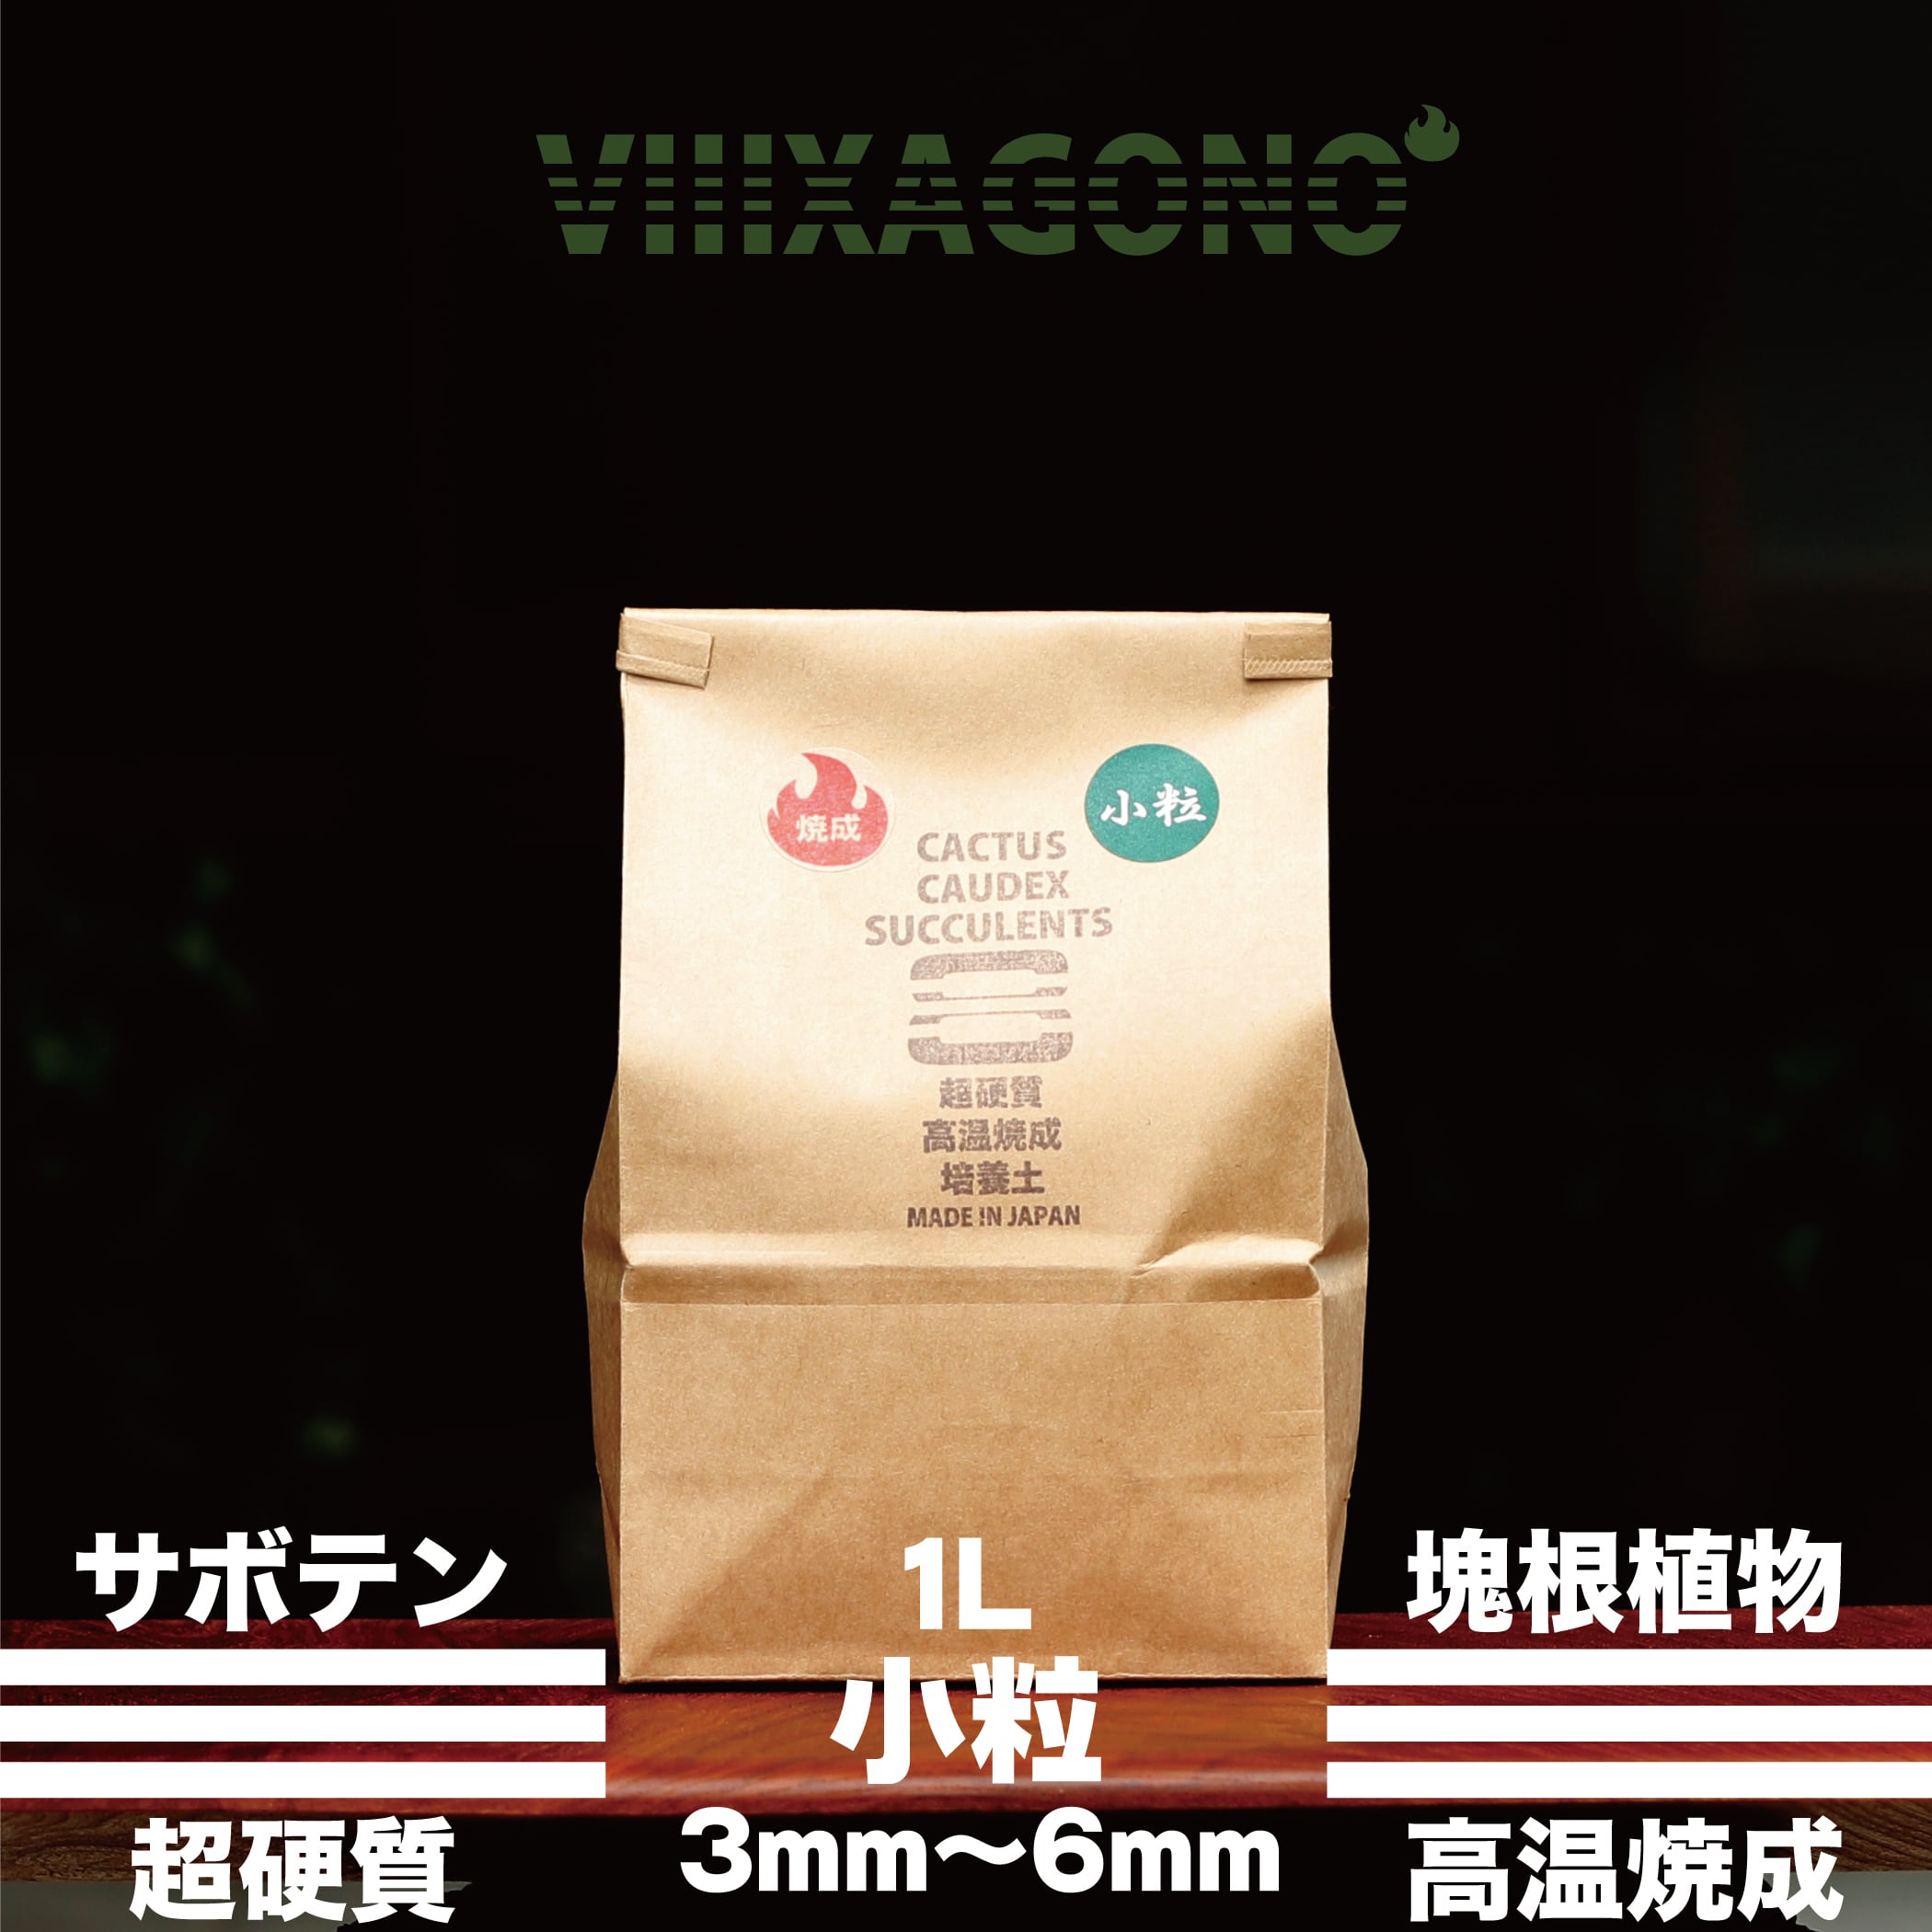 【送料無料】VIIIXAGONO 超硬質焼成培養土 極小粒20L 2mm-3mm